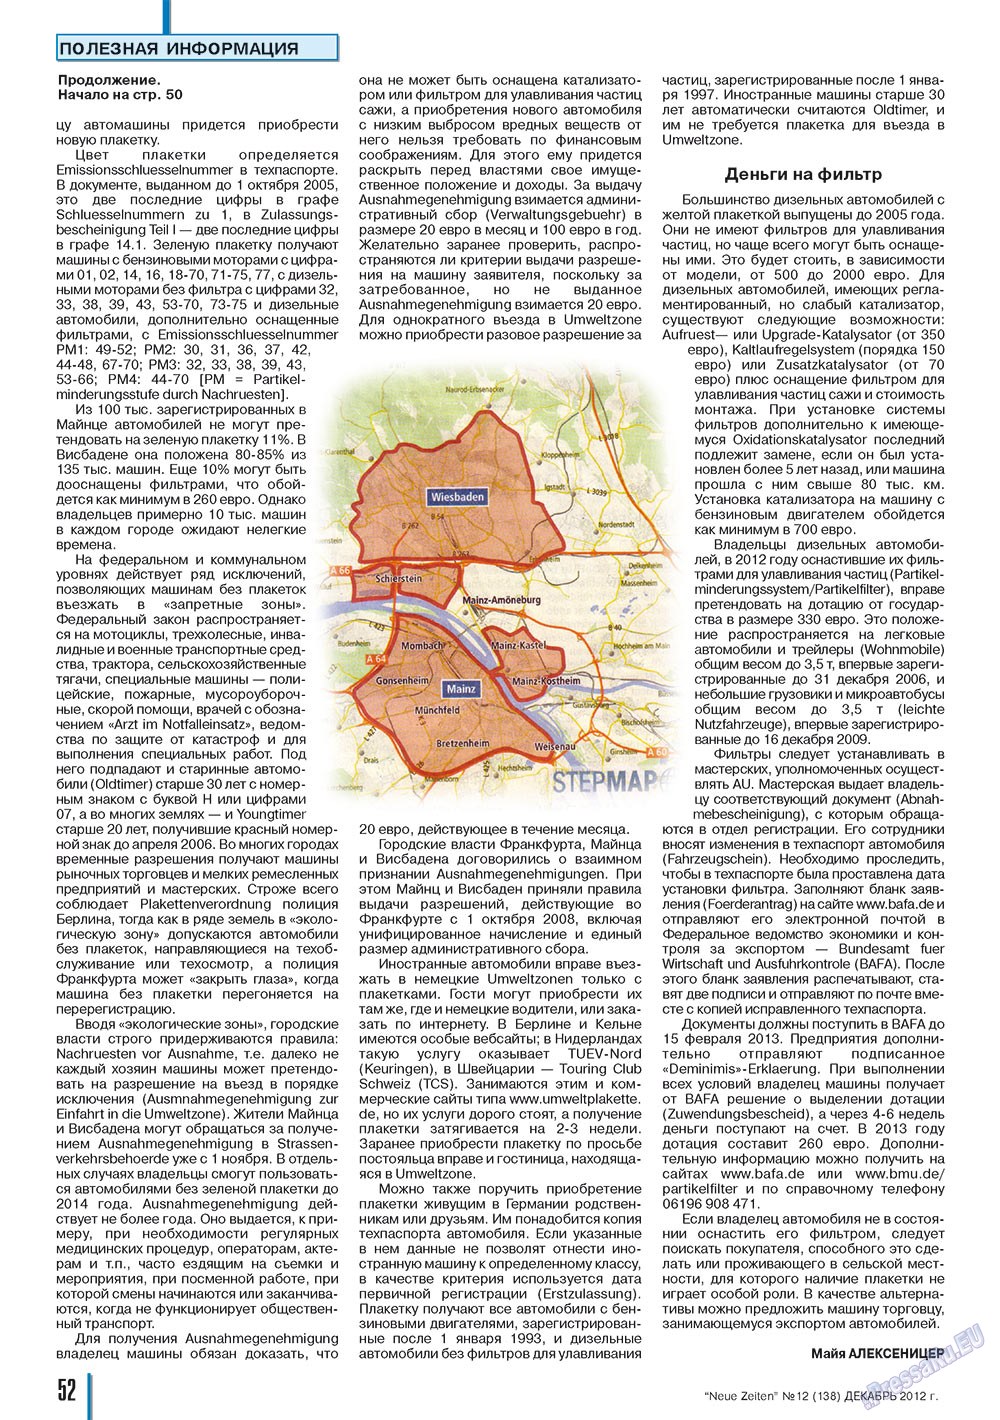 Neue Zeiten, журнал. 2012 №12 стр.52